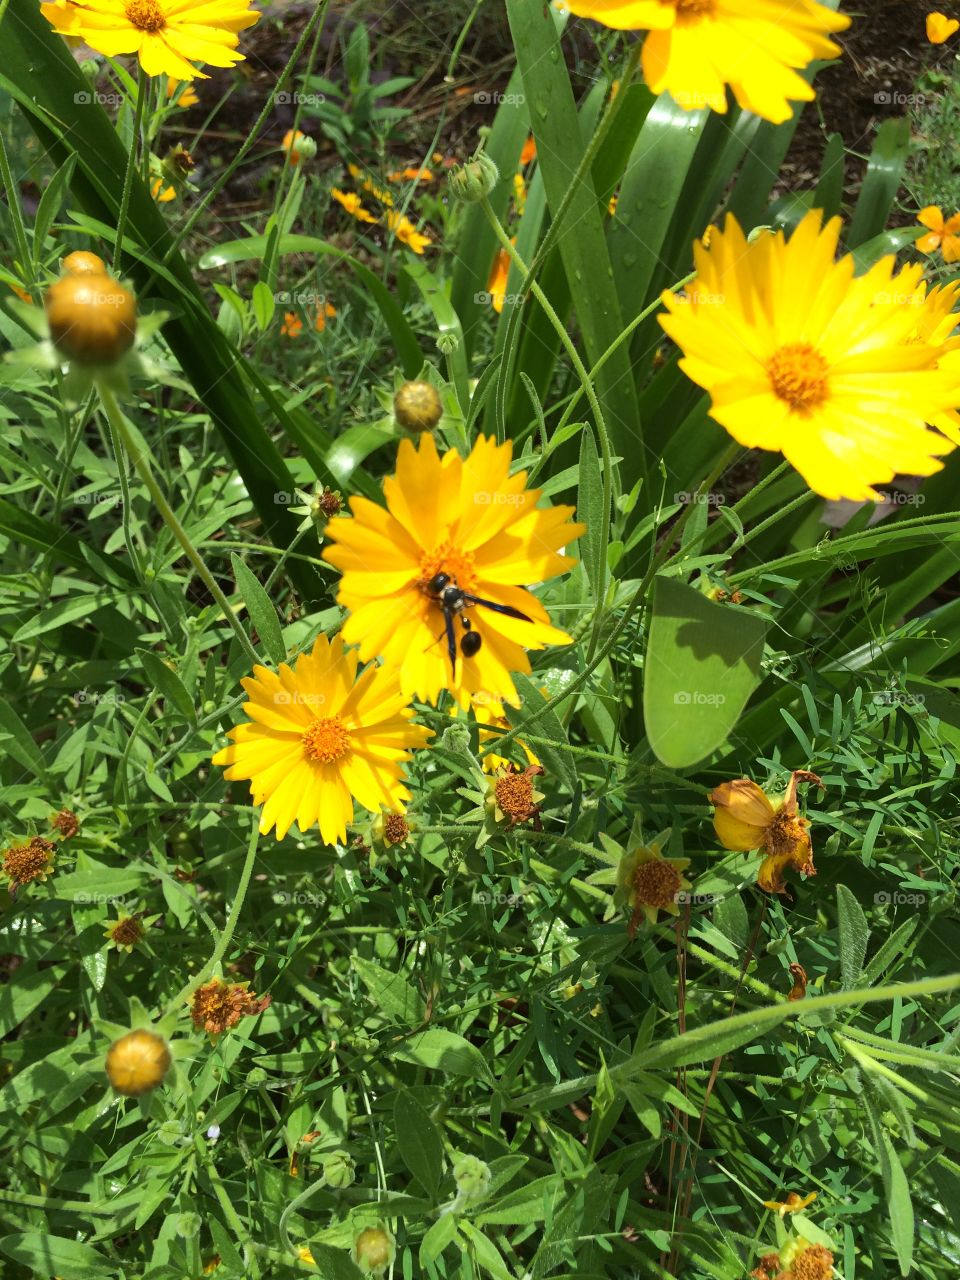 Wasp on flower. Flower